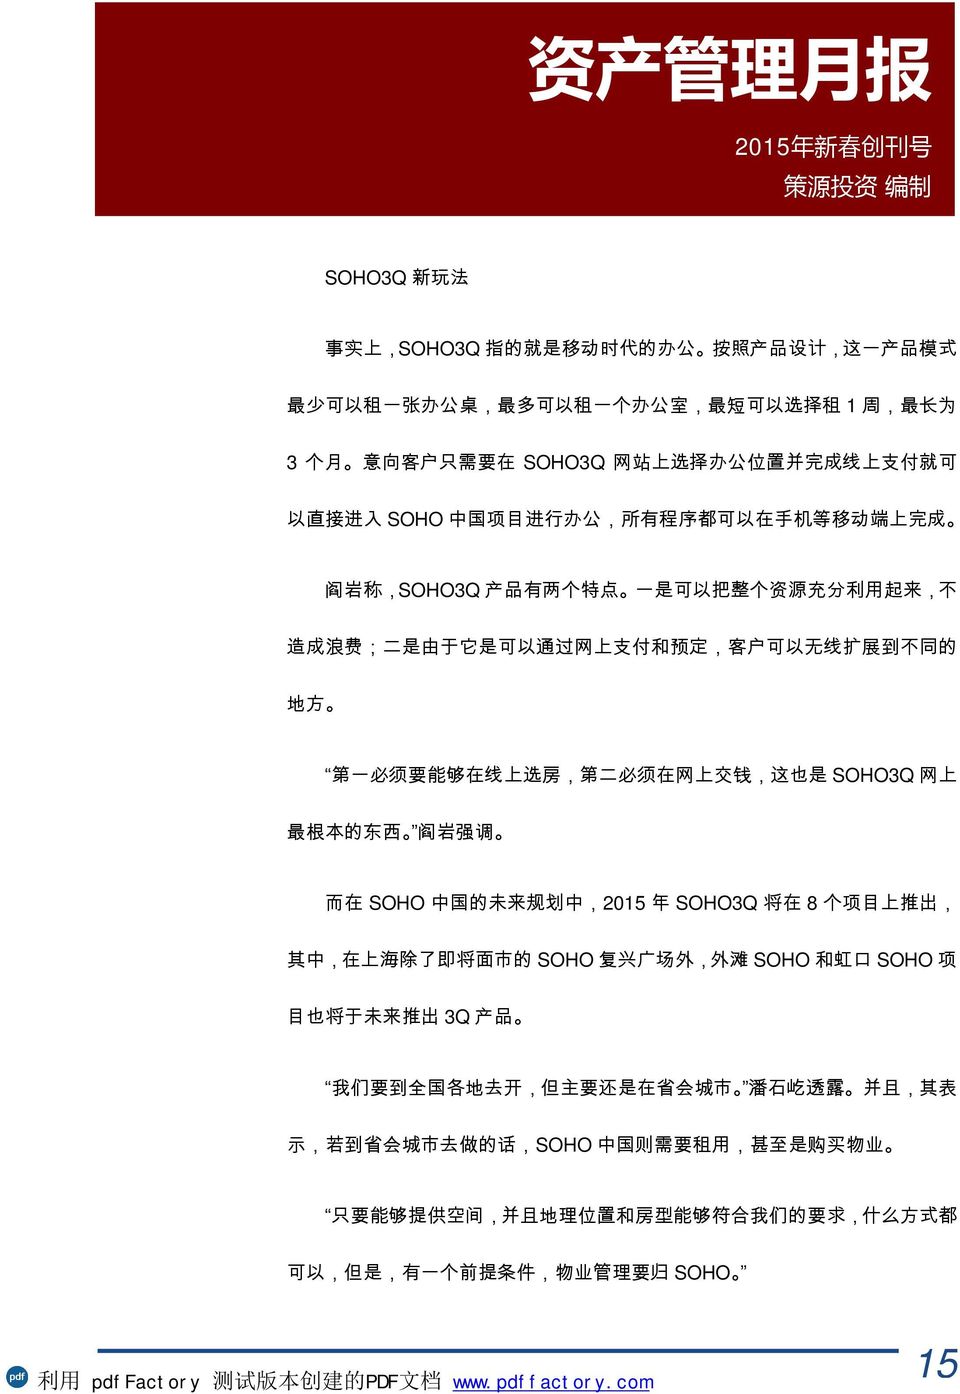 的 地 方 第 一 必 须 要 能 够 在 线 上 选 房, 第 二 必 须 在 网 上 交 钱, 这 也 是 SOHO3Q 网 上 最 根 本 的 东 西 阎 岩 强 调 而 在 SOHO 中 国 的 未 来 规 划 中,2015 年 SOHO3Q 将 在 8 个 项 目 上 推 出, 其 中, 在 上 海 除 了 即 将 面 市 的 SOHO 复 兴 广 场 外, 外 滩 SOHO 和 虹